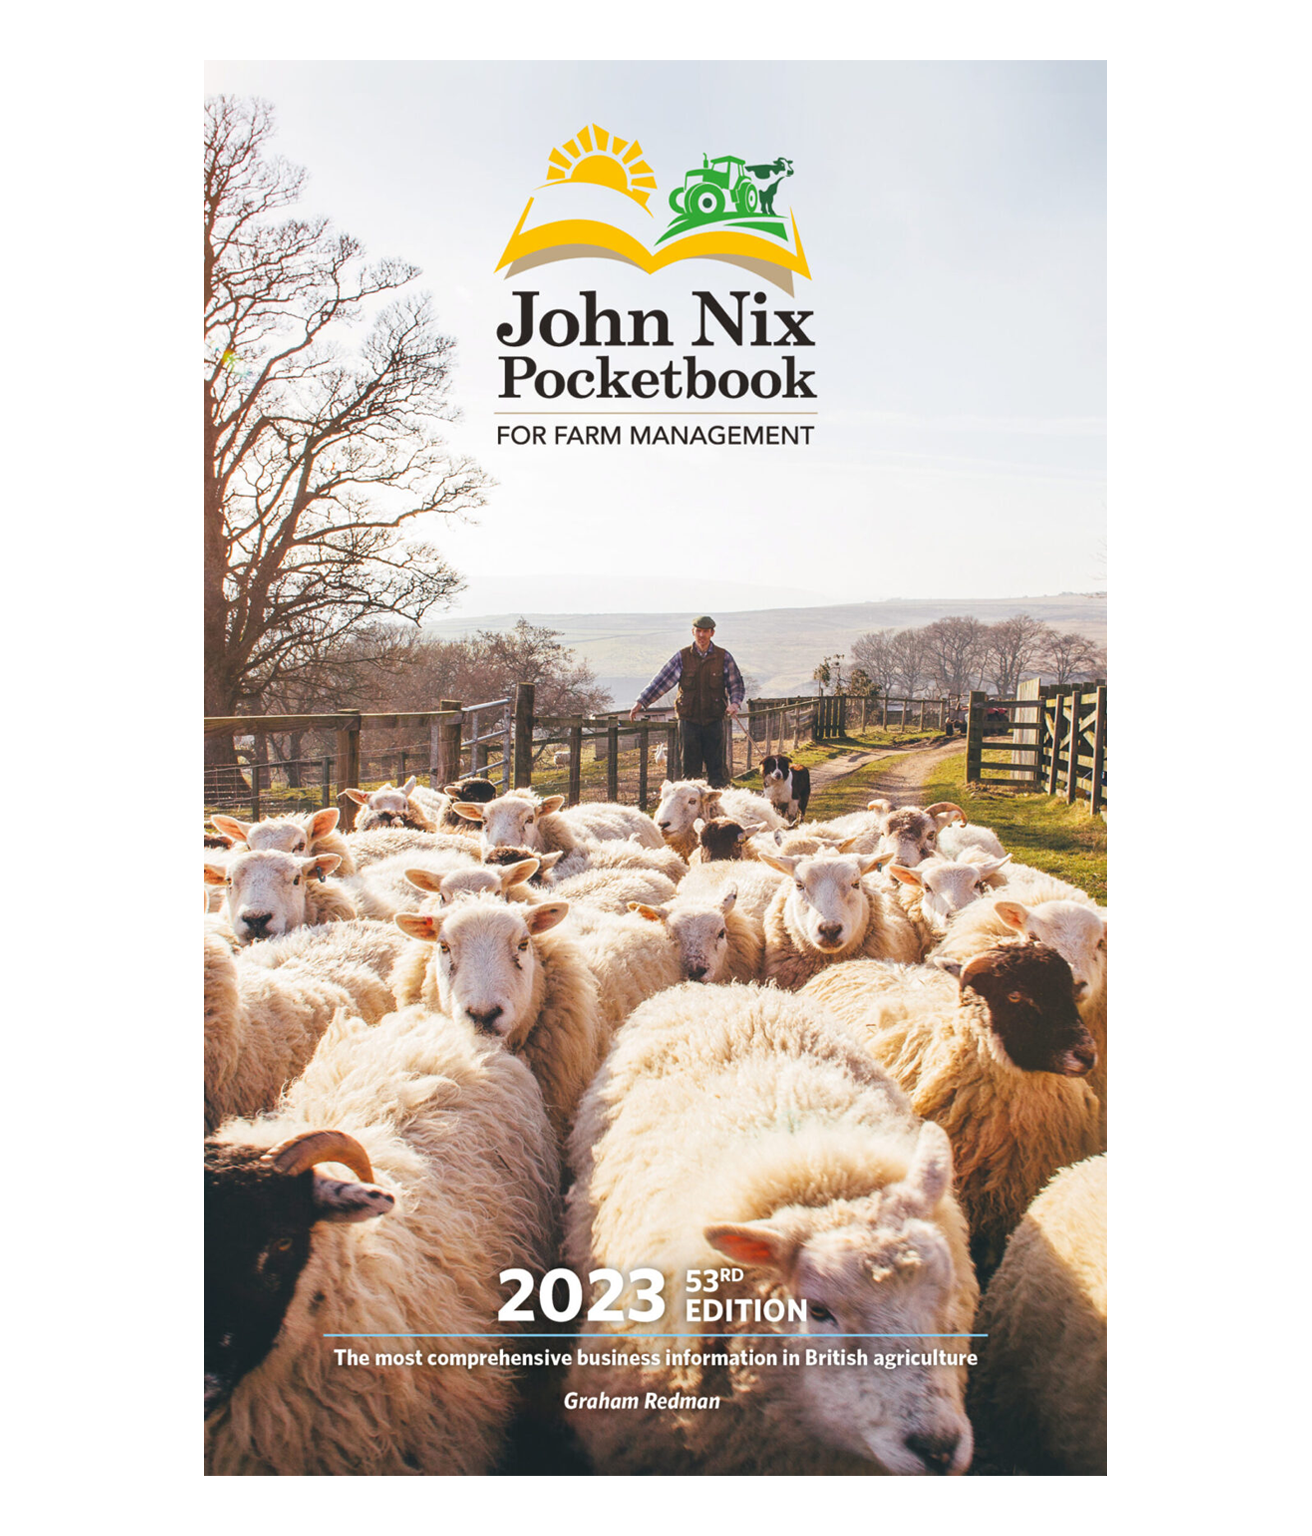 John Nix Pocketbook 53rd Edition product shot